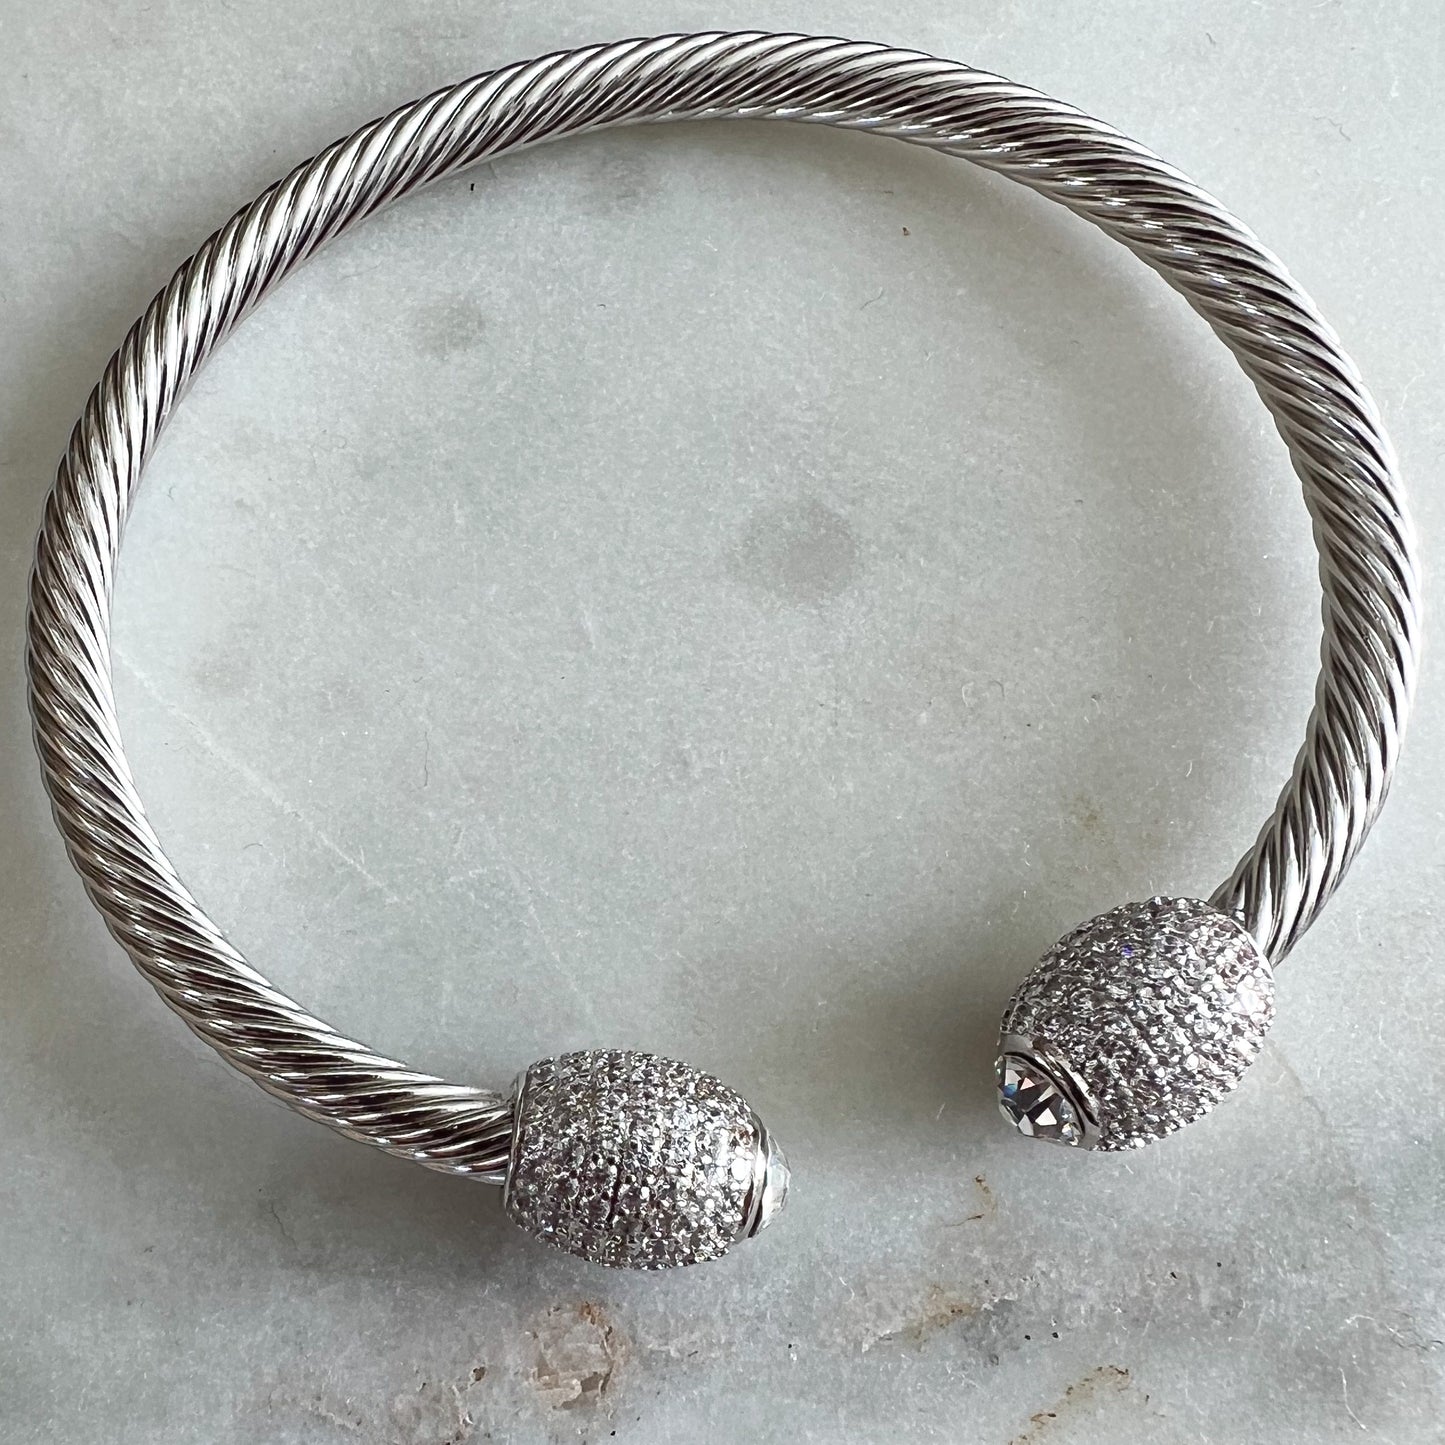 Bodian Pave Crystal Cuff Bracelet